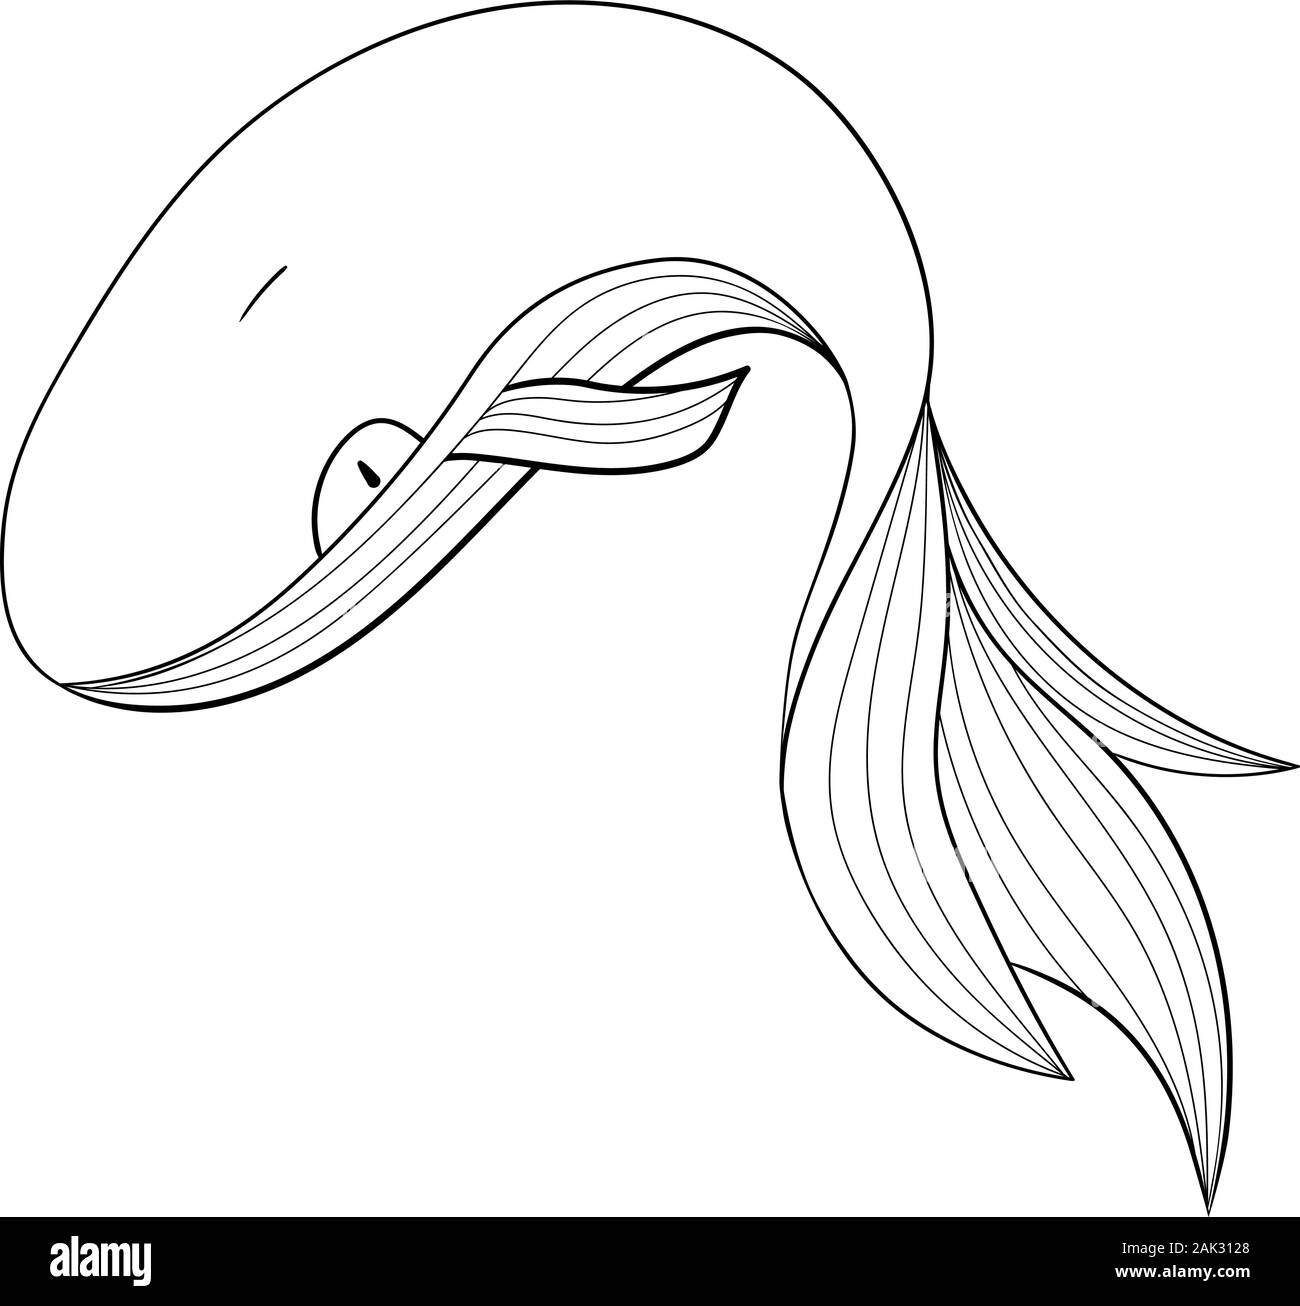 Contours du logo d'un rorqual bleu. Enregistrer le logo animal baleine illustration. L'océan, sur la mer. Style d'art de la ligne. Vector illustration isolé. L'icône Contour. Illustration de Vecteur